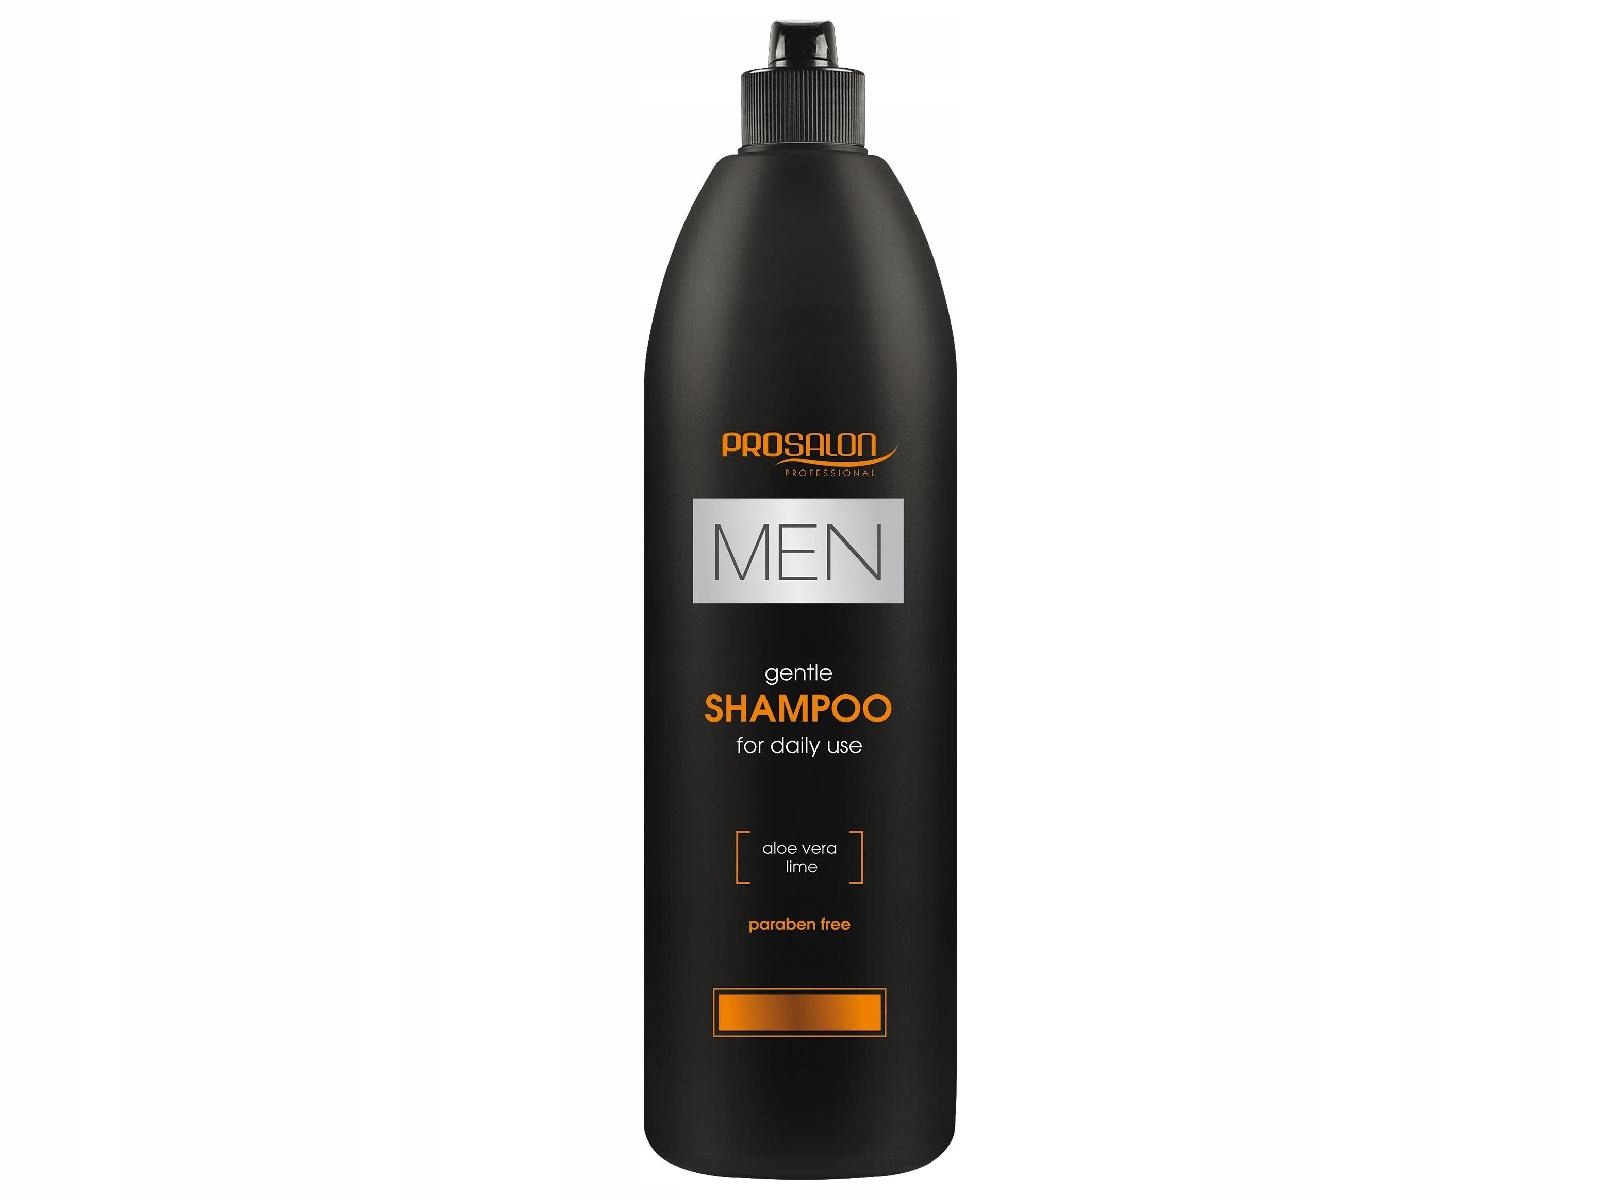 łagodny szampon dla mężczyzn